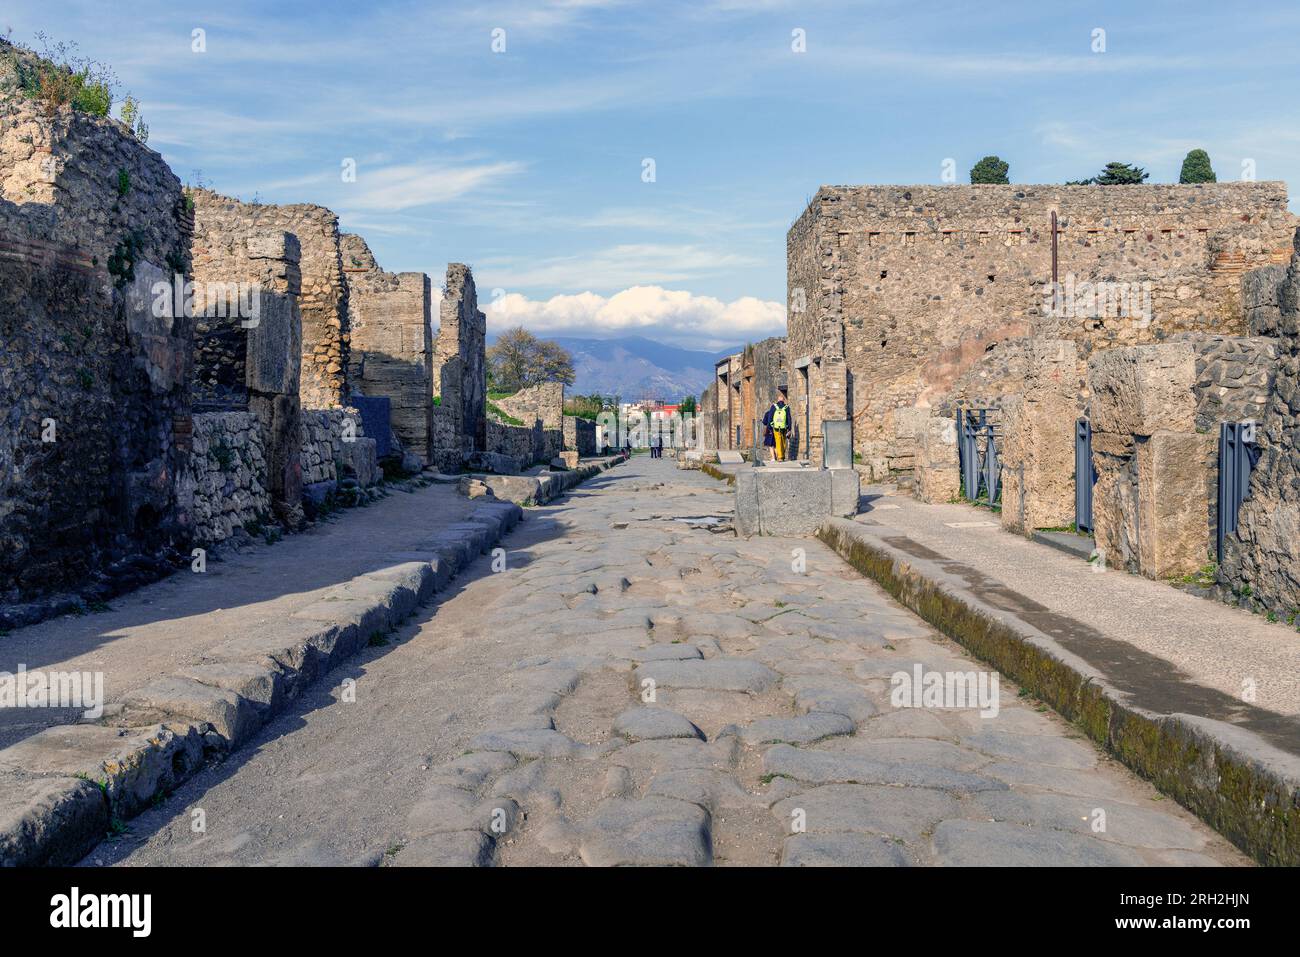 Sito archeologico di Pompei, Campania, Italia. Via dell'abbondanza, una delle strade principali della città. Pompei, Ercolano e Torre Annunziata Foto Stock